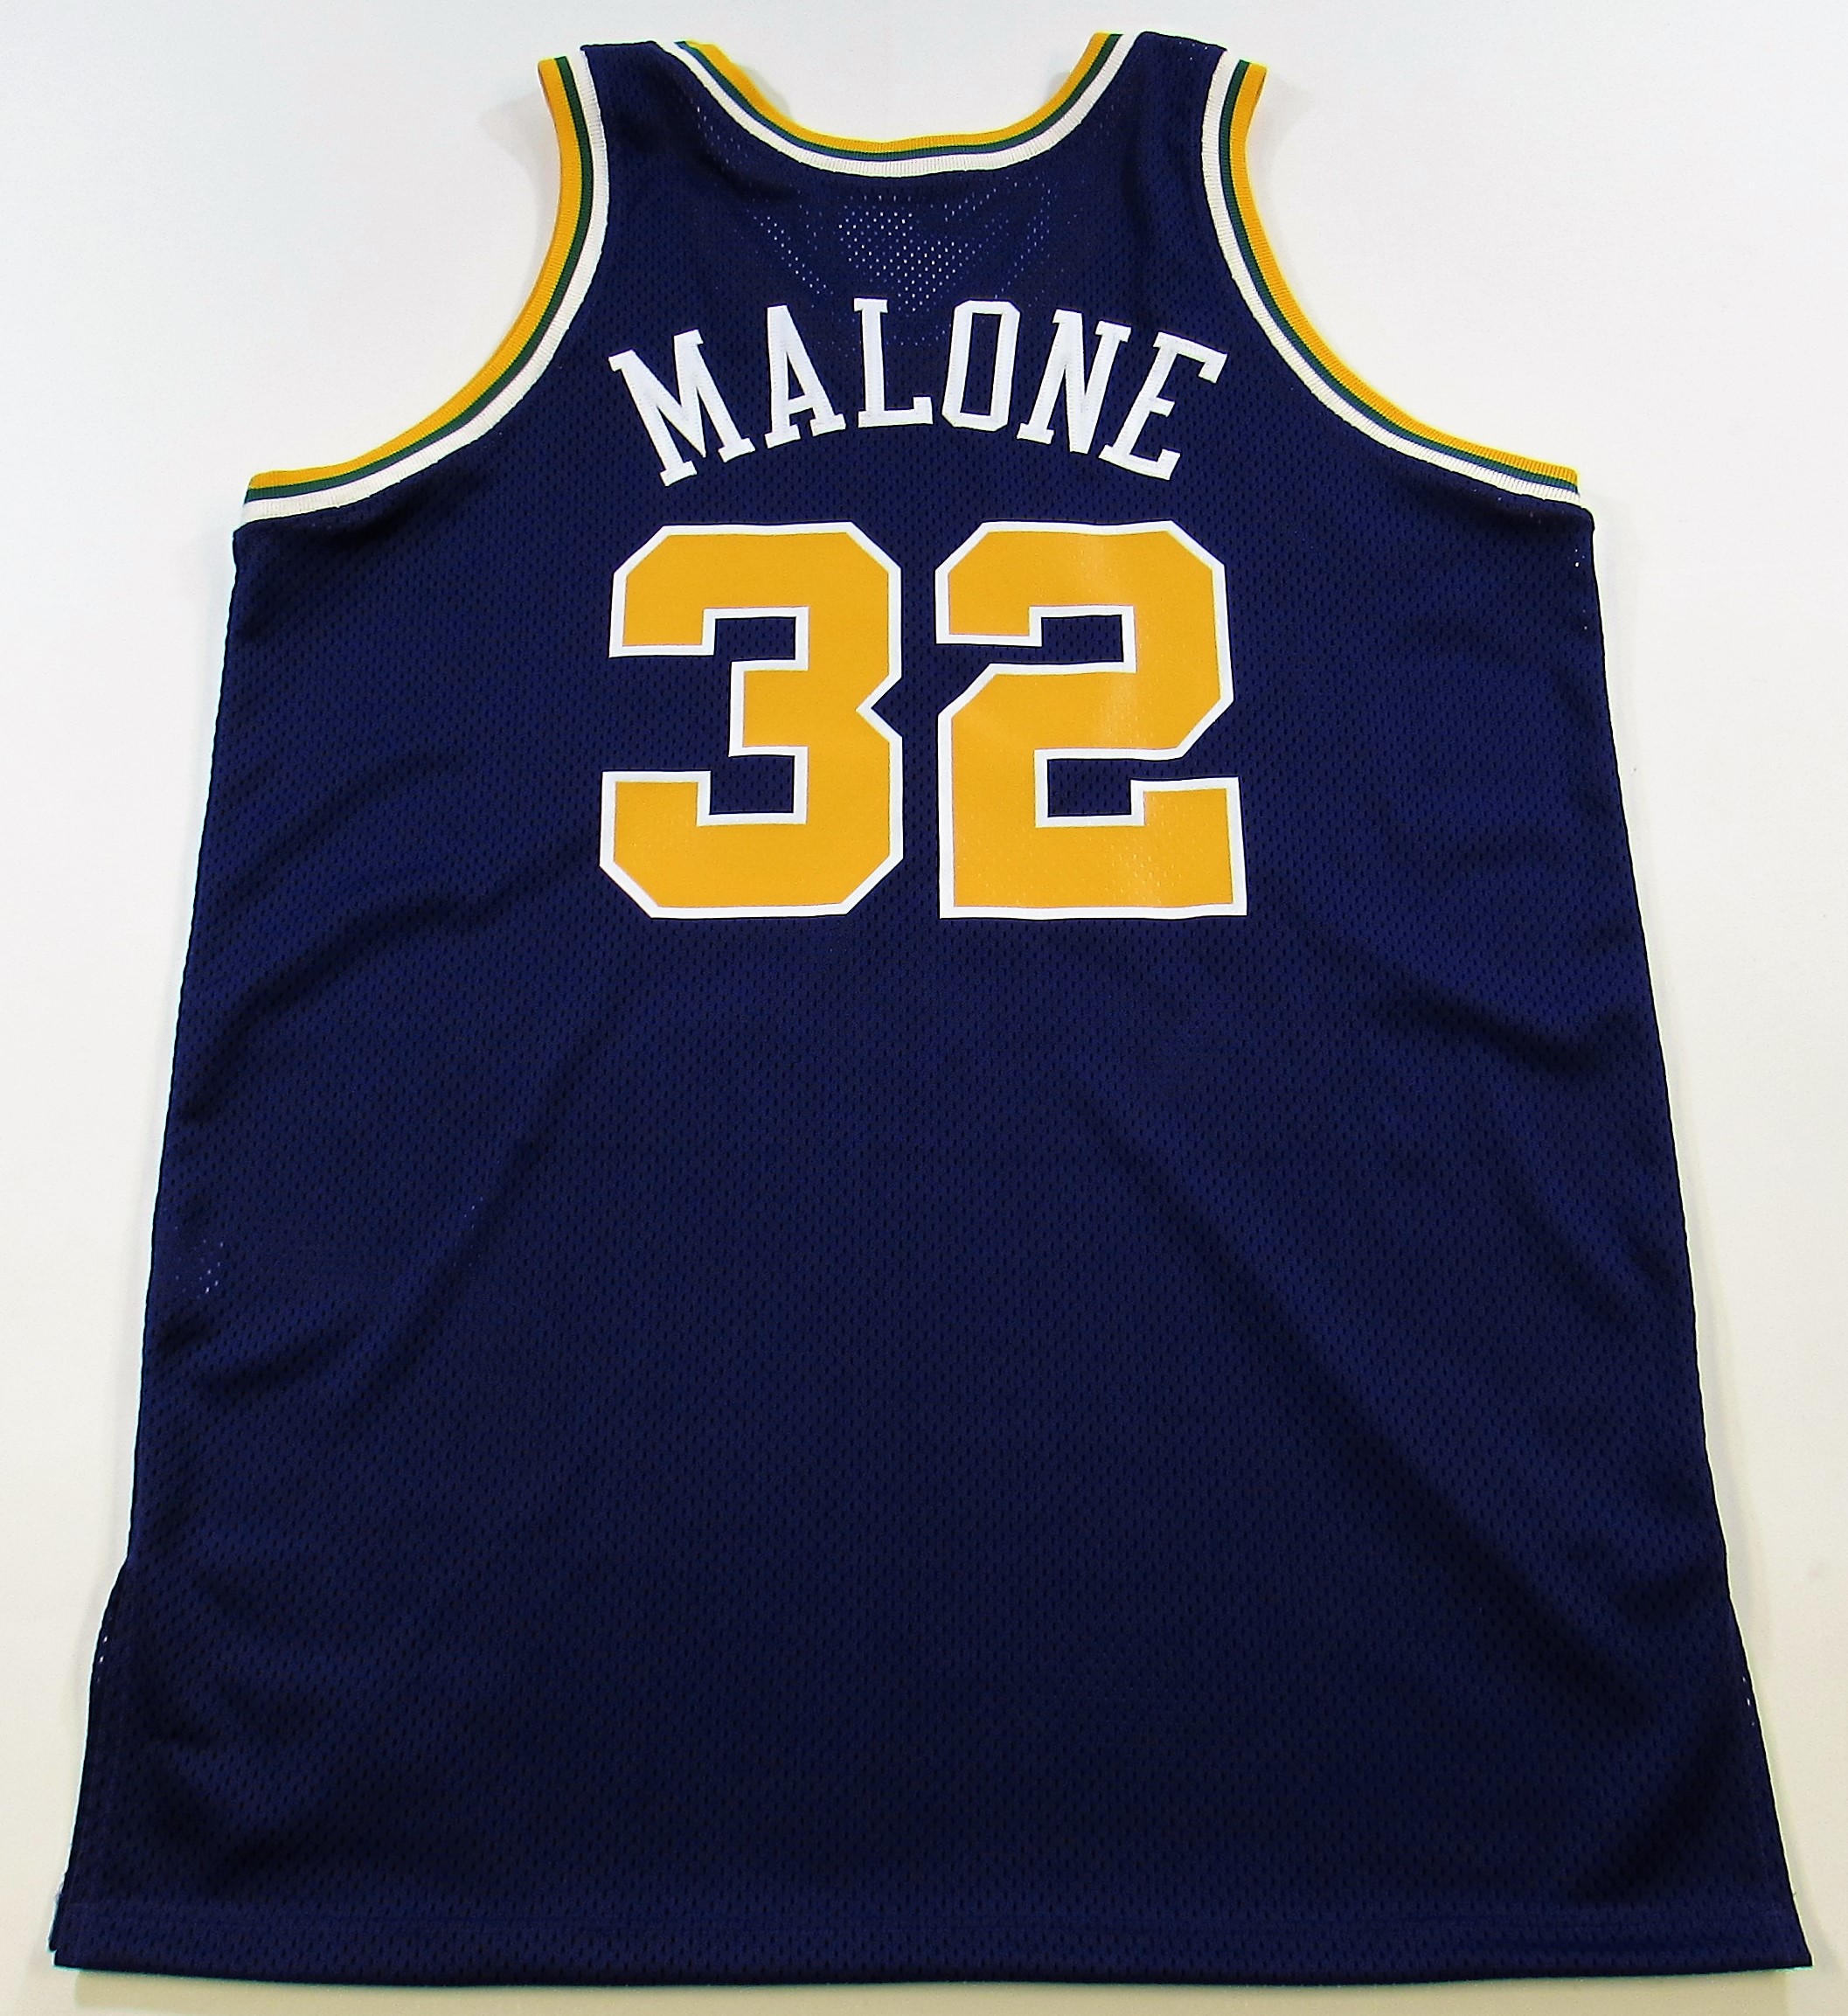 1989-90 Karl Malone Game Worn Utah Jazz Jersey.  Basketball, Lot #82476